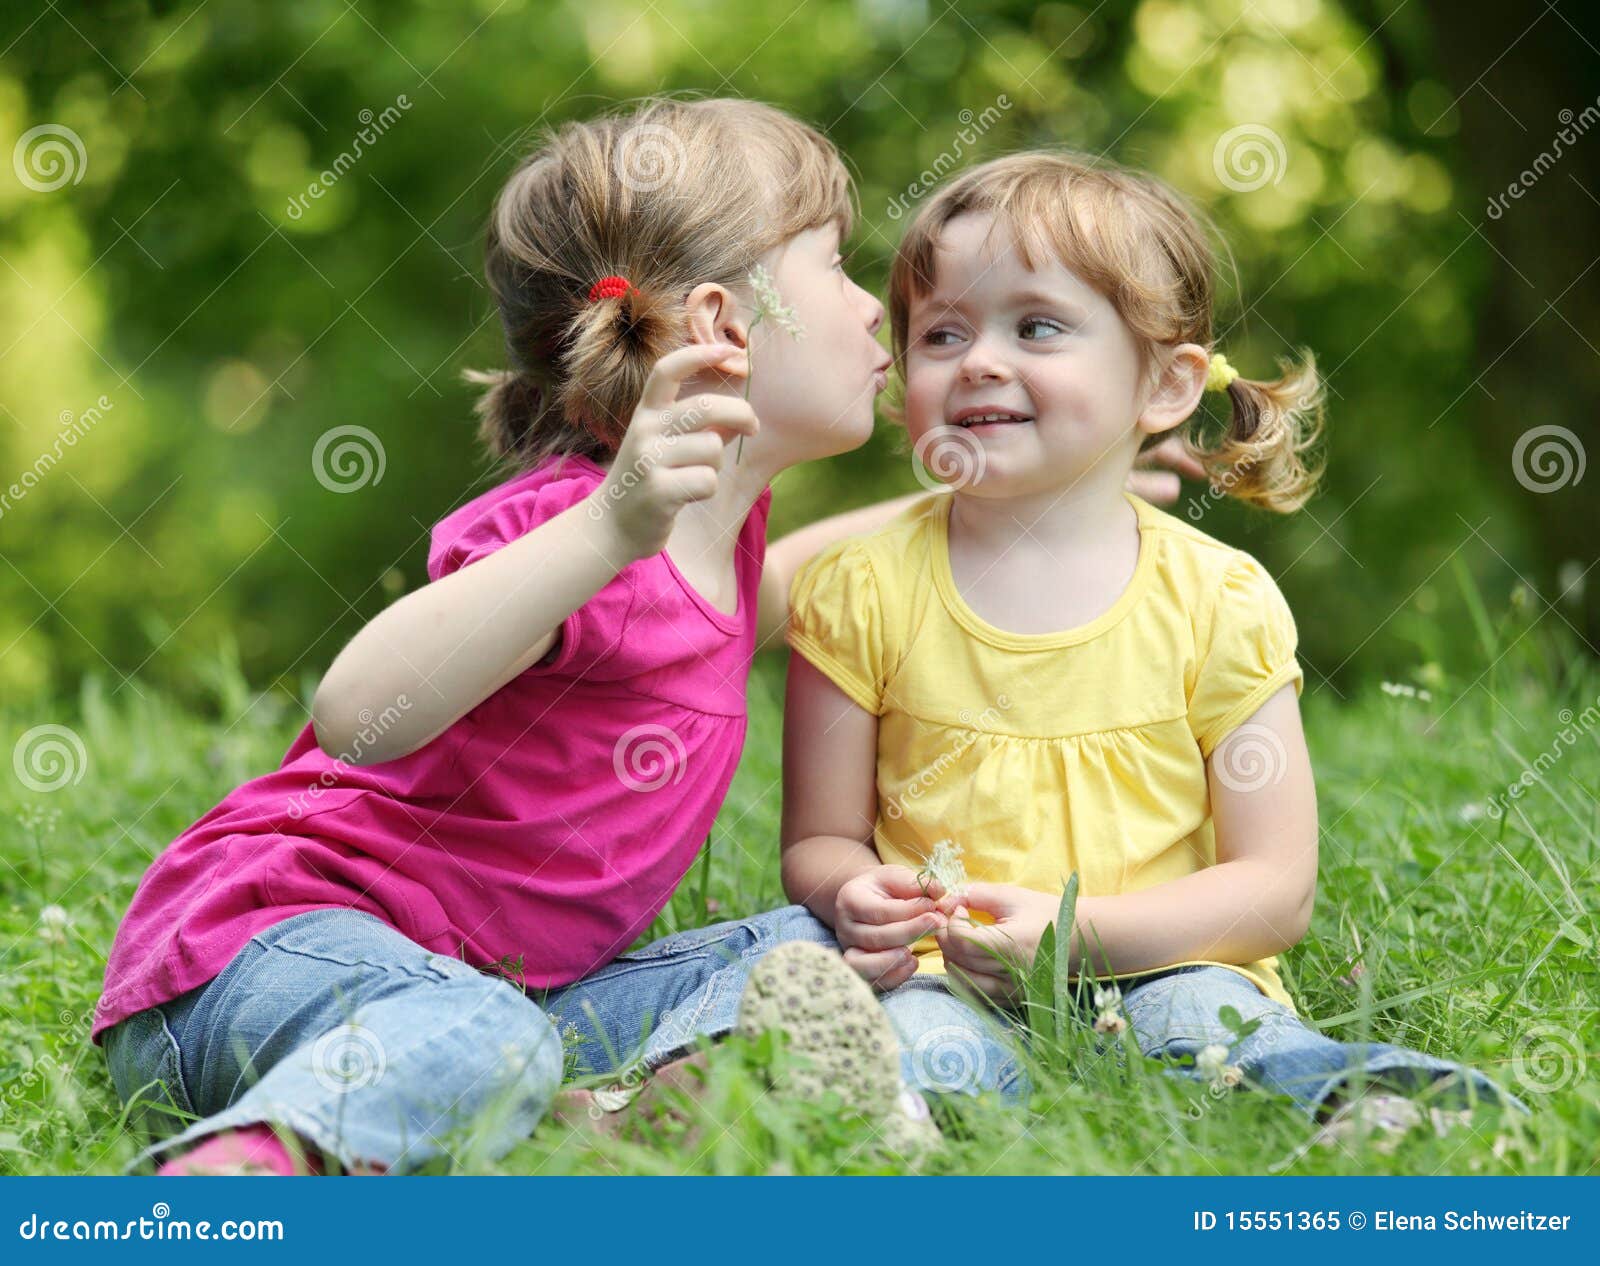 two little girls telling secrets